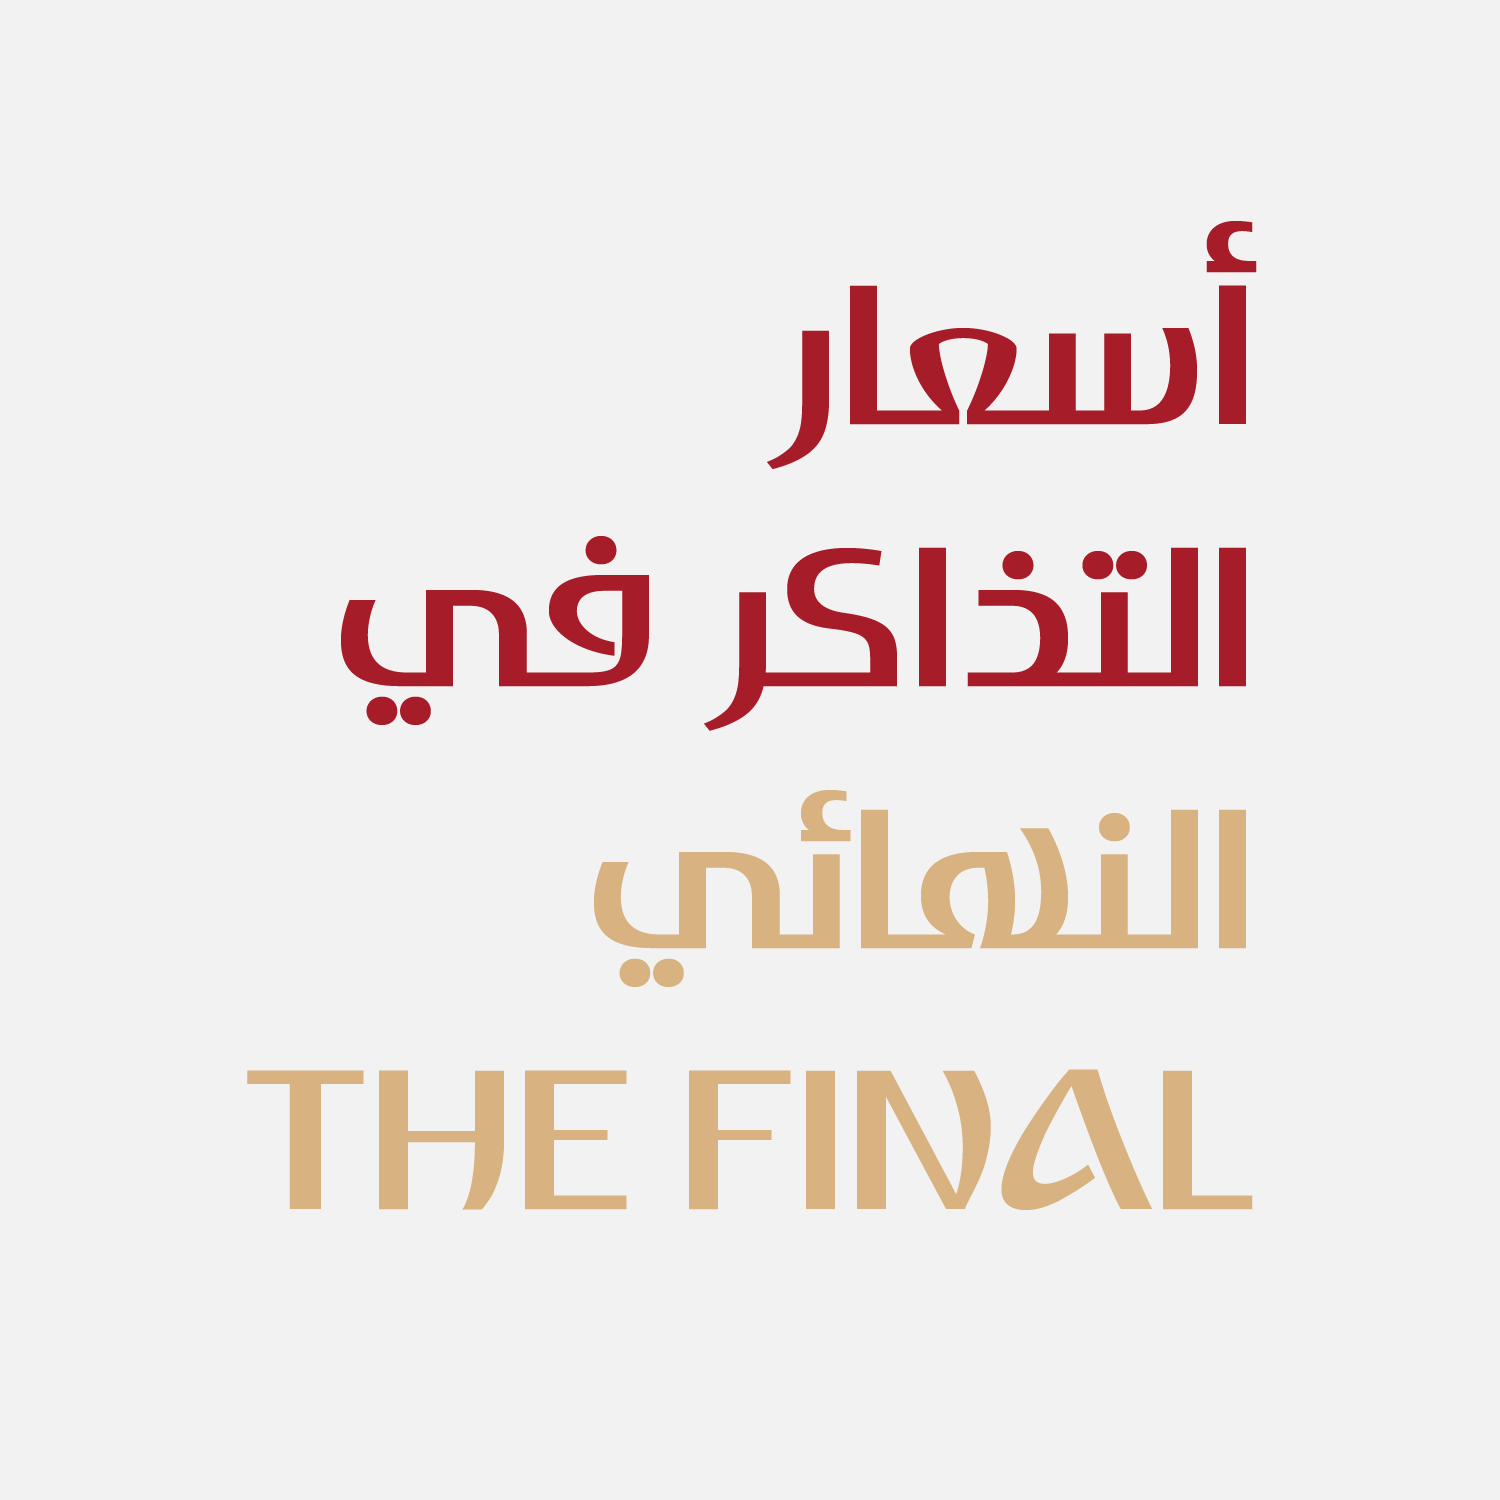 Dusha Free Arabic Typeface - arabic